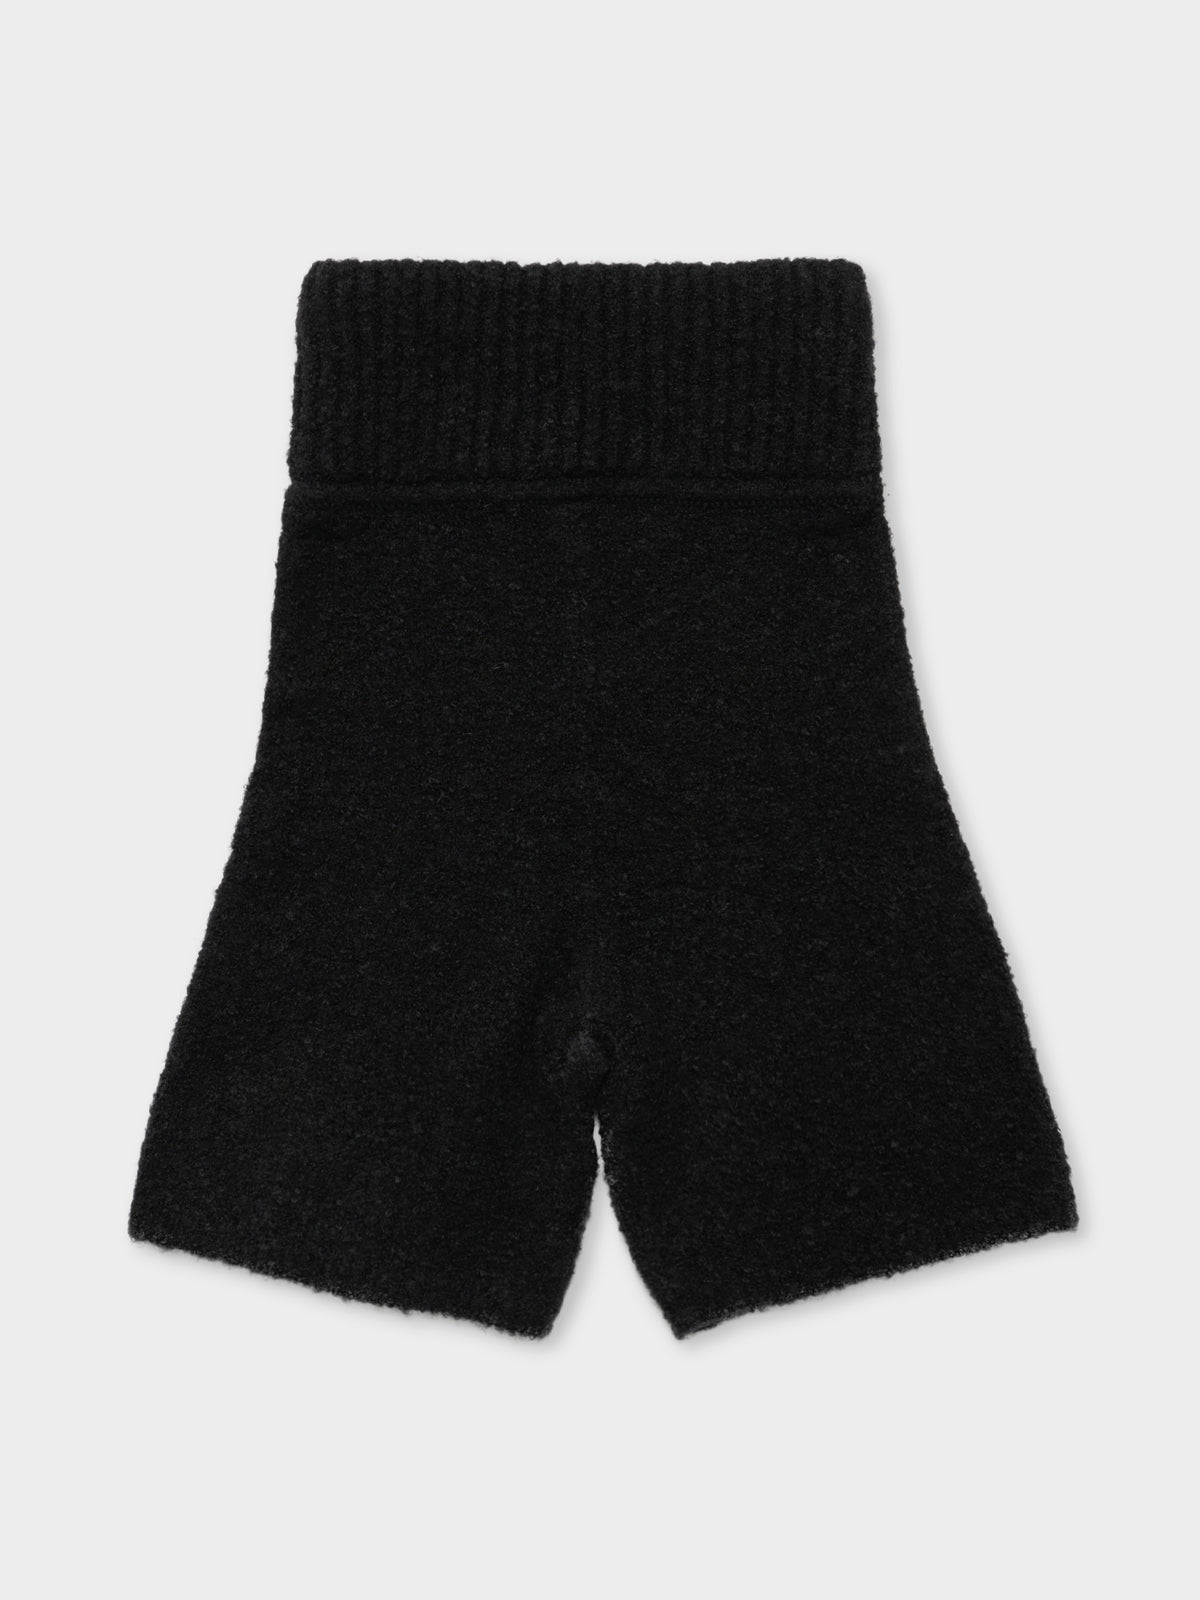 Triple Double Knit Shorts in Black